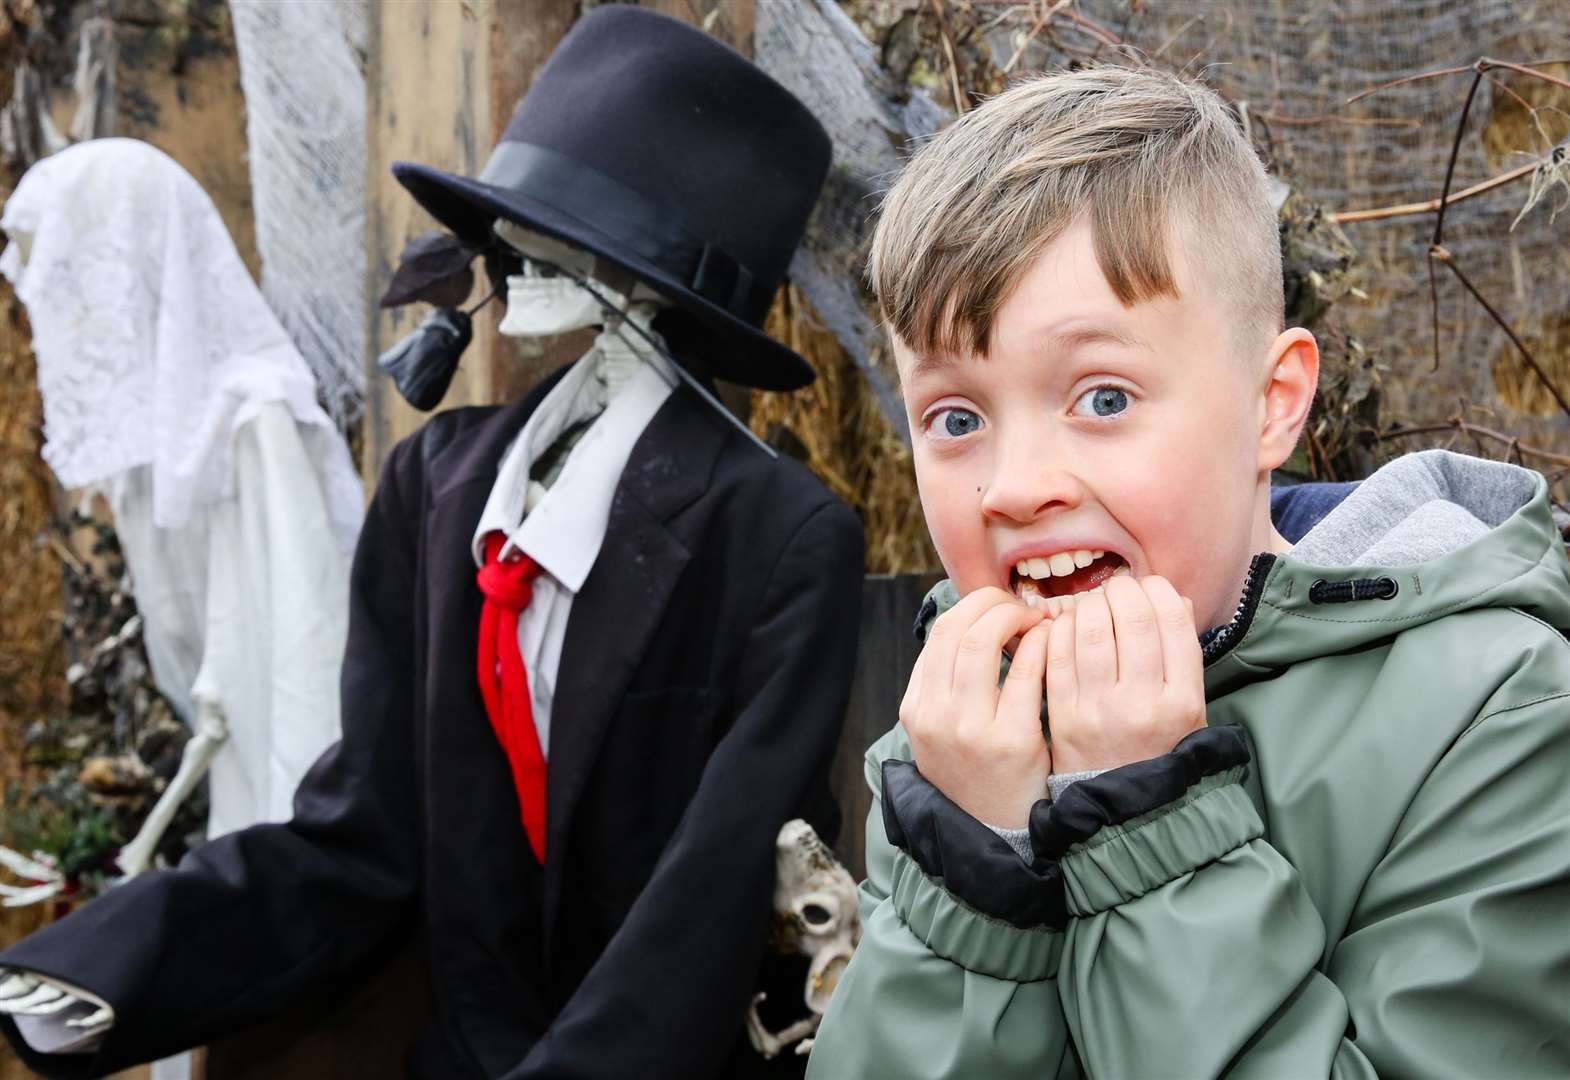 Broadwitch Hauntfest In Southfleet Offers Family Friendly Halloween Fun